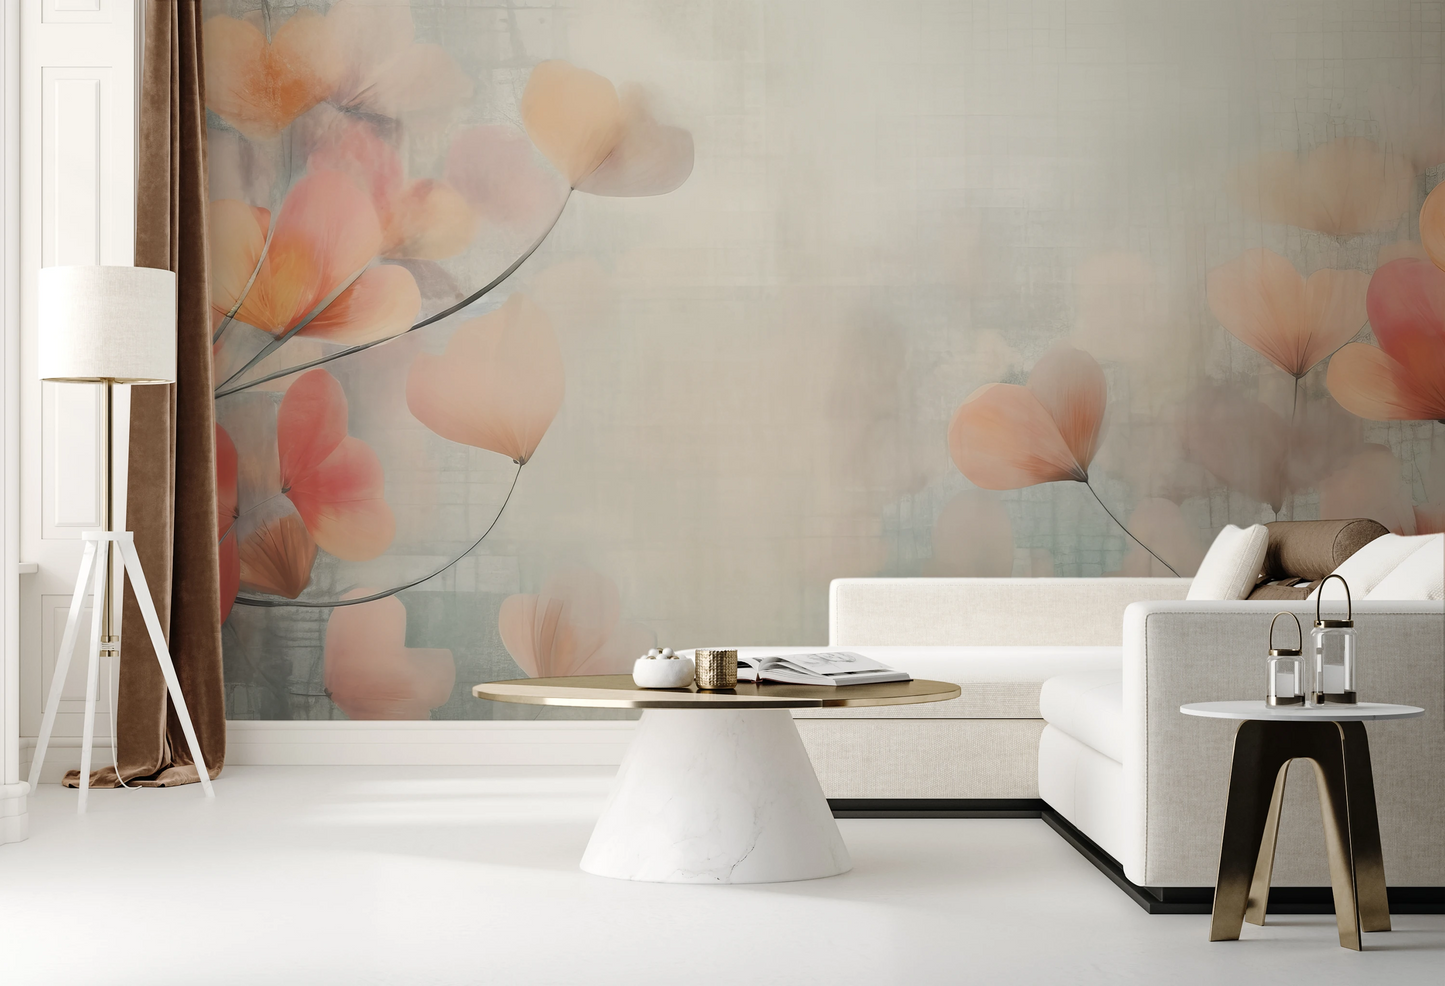 Fototapeta o nazwie Abstract Blossom Art użyta w aranzacji wnętrza.